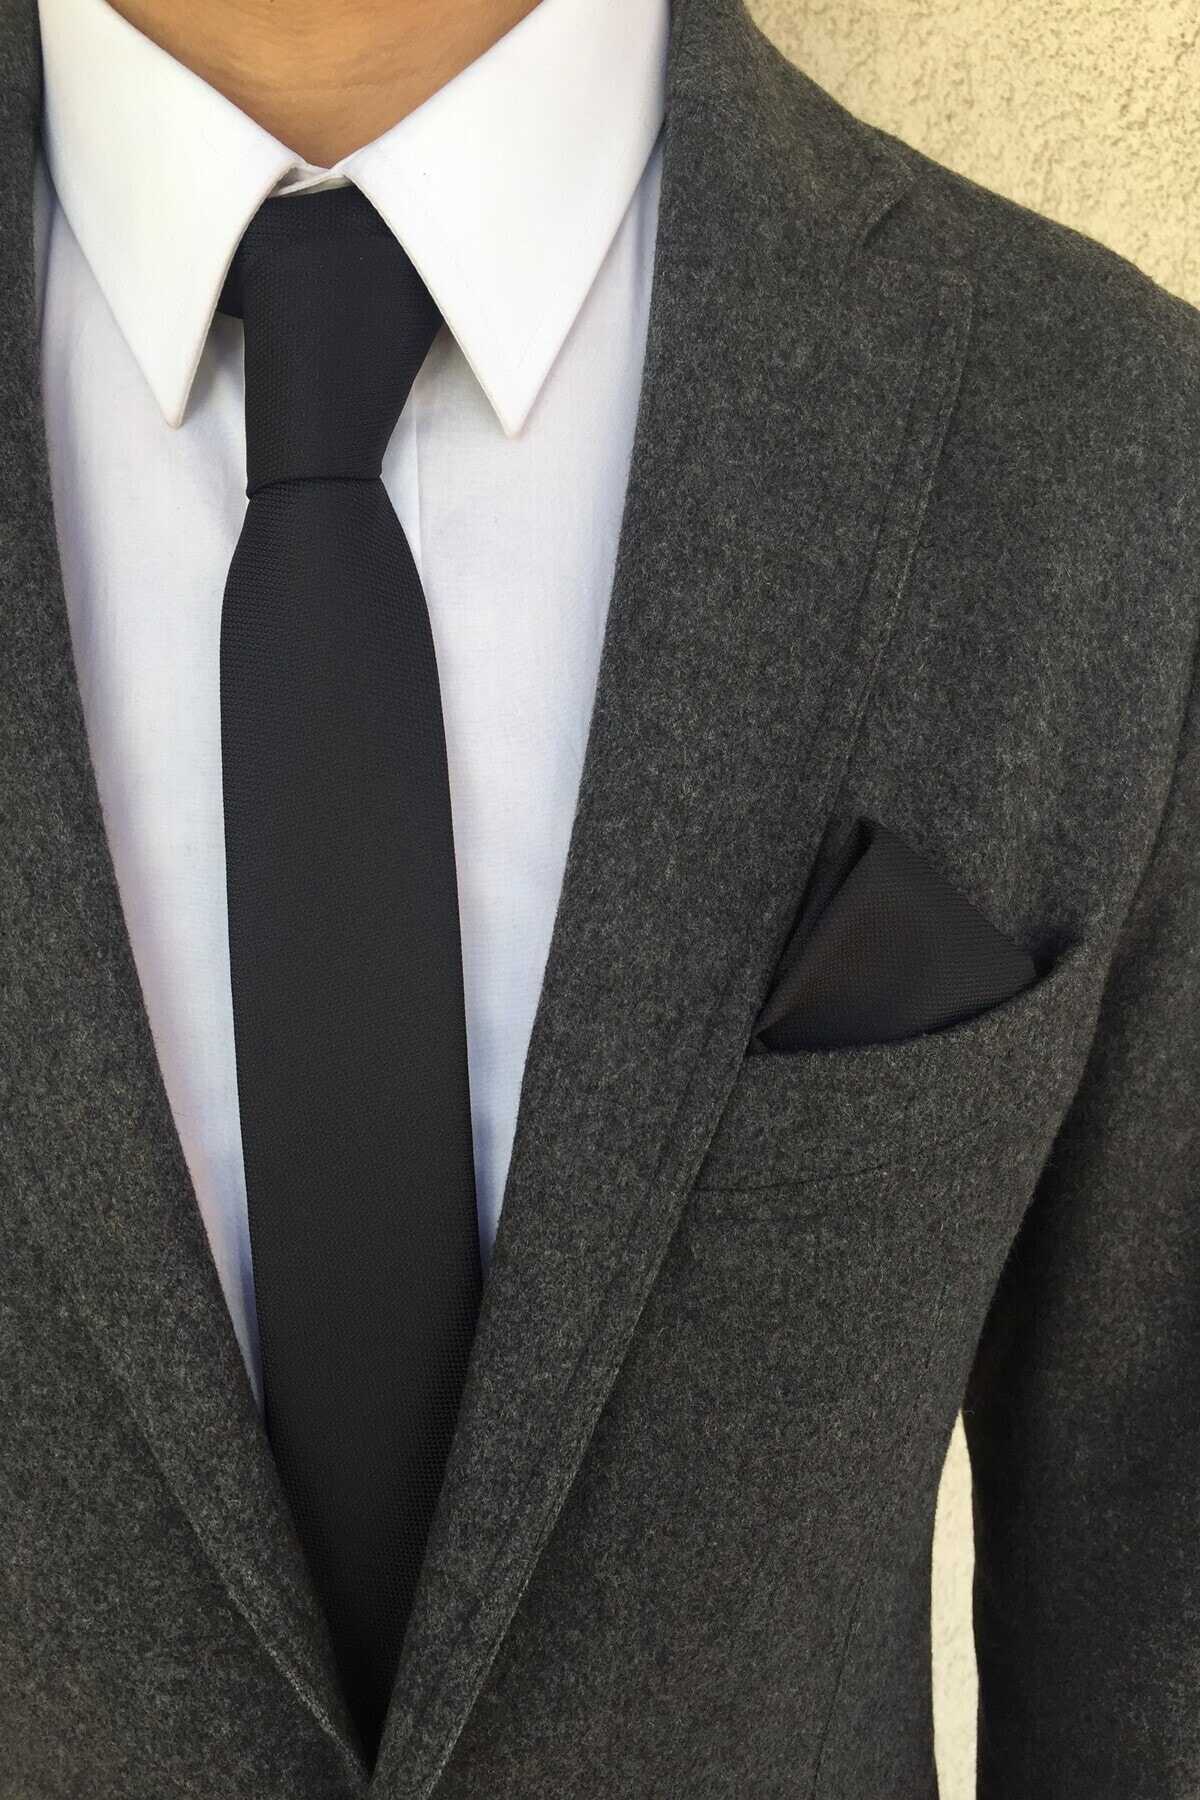 ست کراوات دستمال جیبی مردانه مشکی برند Kravatistan 